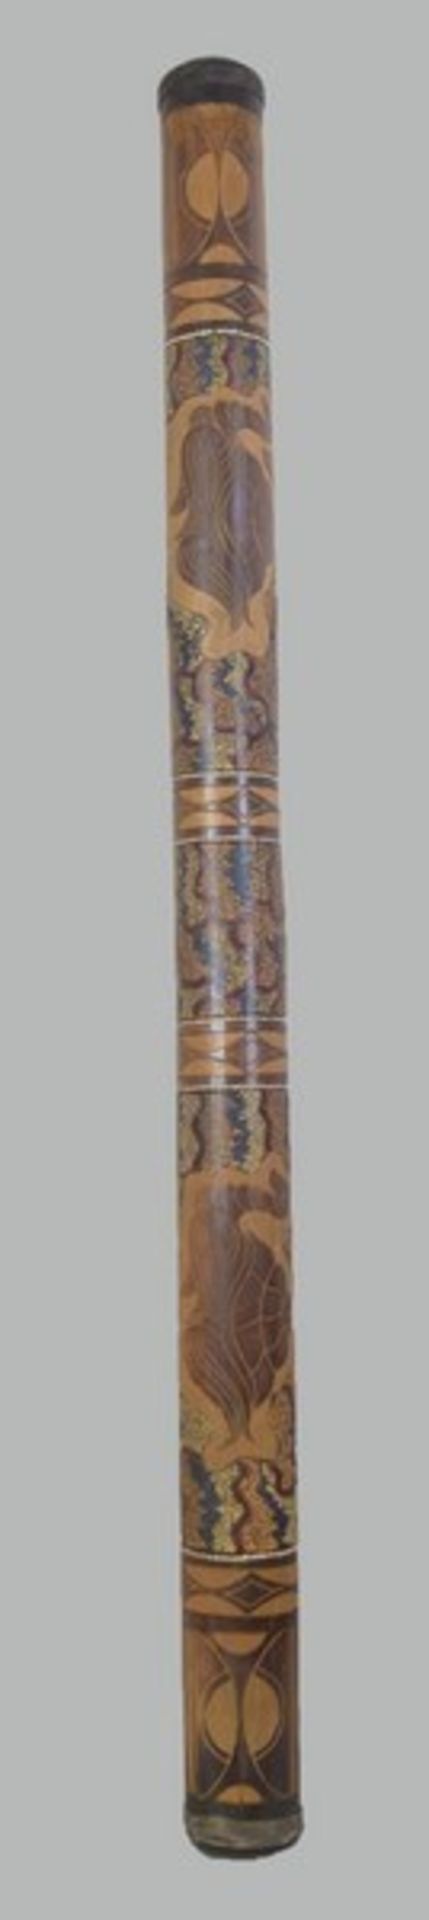 Didgeridoo Holz, geschnitzt, bunt verziert, L 126 cm